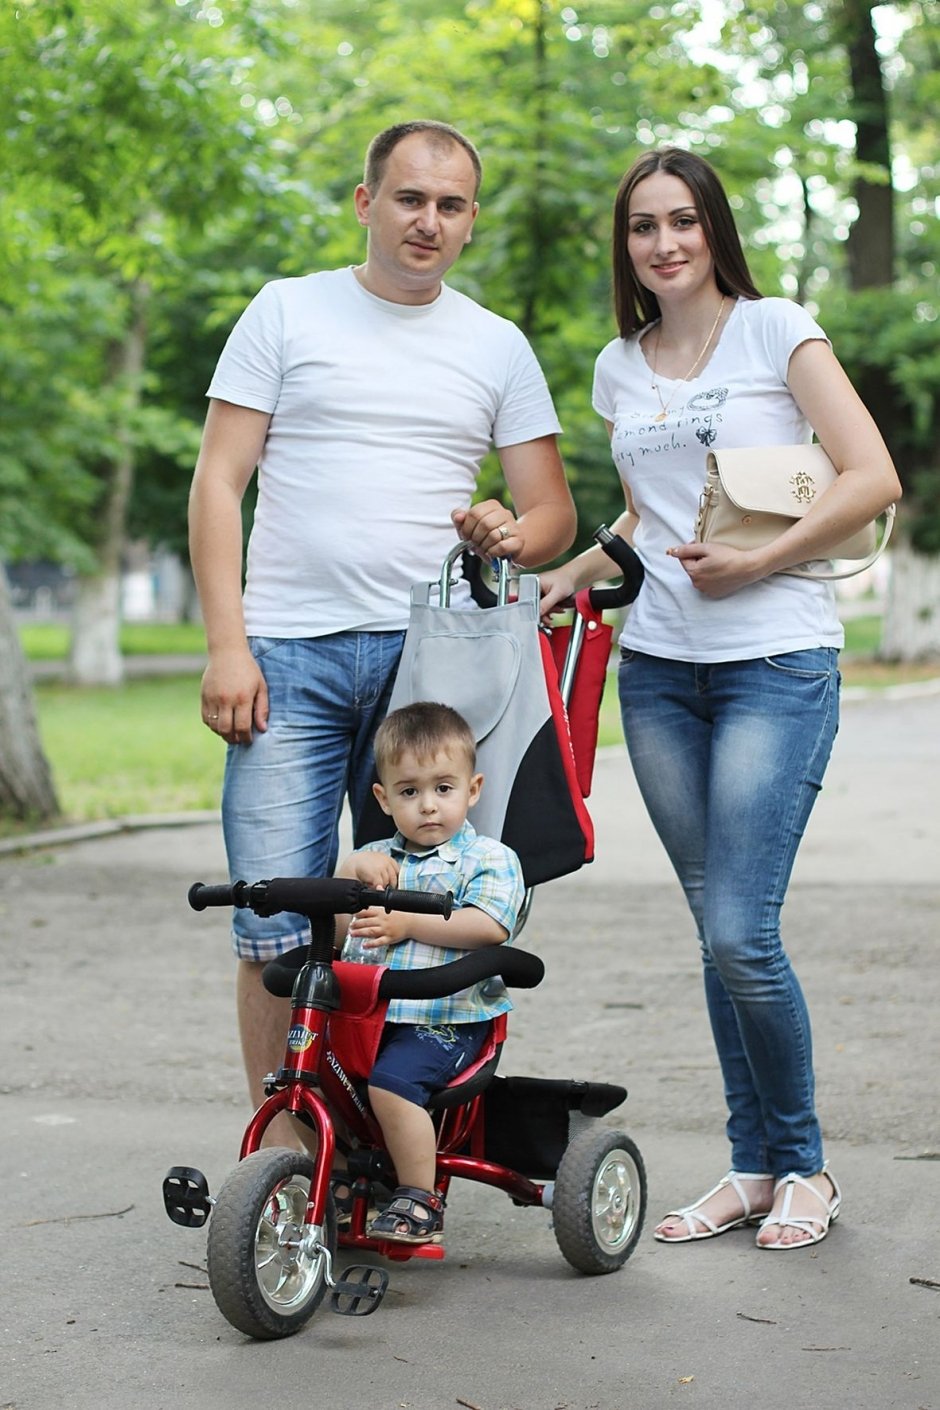 Сергей, 30 лет и Ирина 30 лет Данил 2 года Каждый день на колесах,на машине,велосипеде.В парках и возле Фрегата